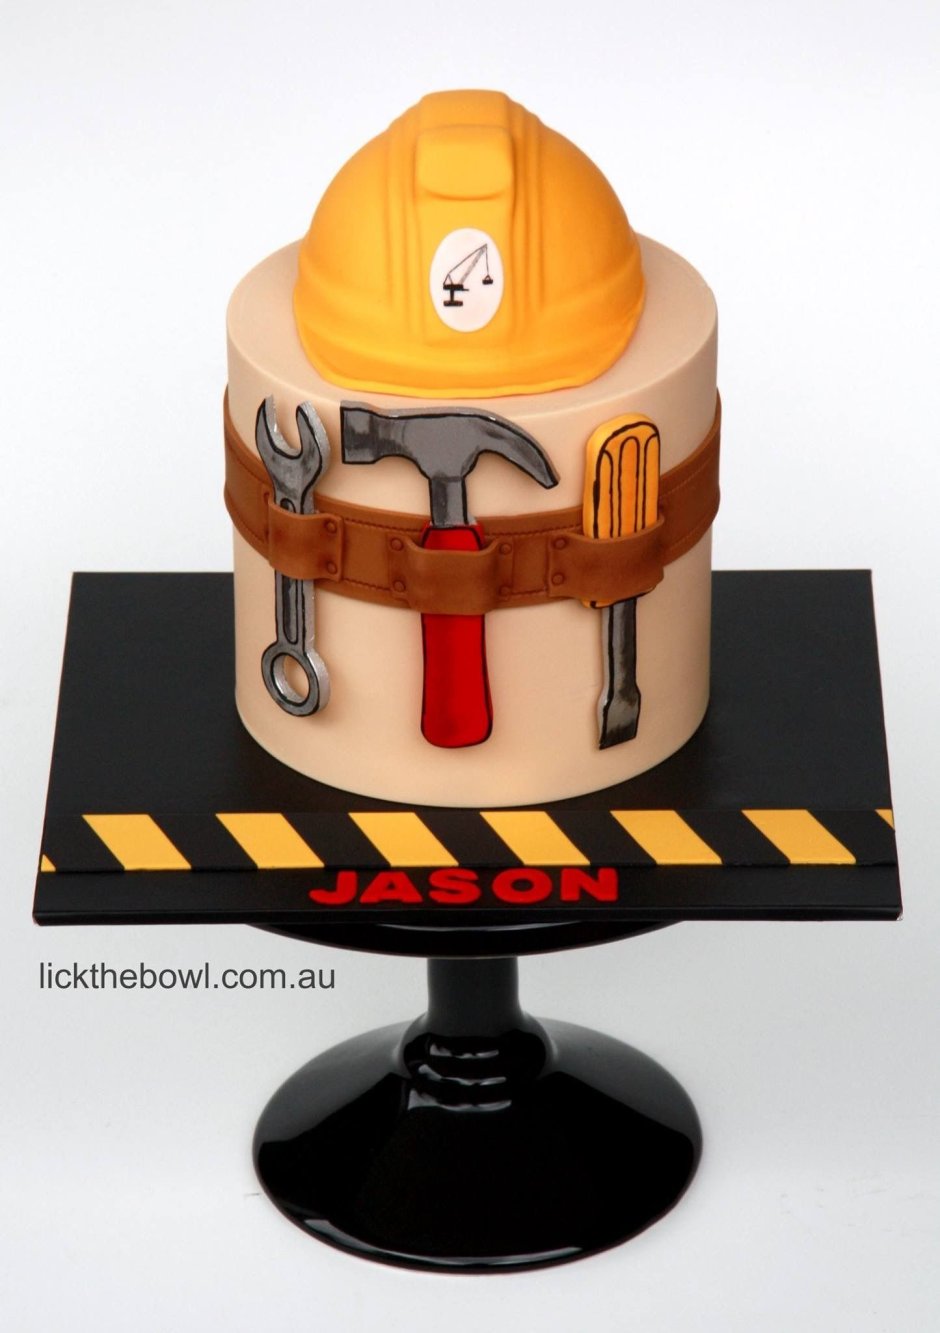 Торт для строителя